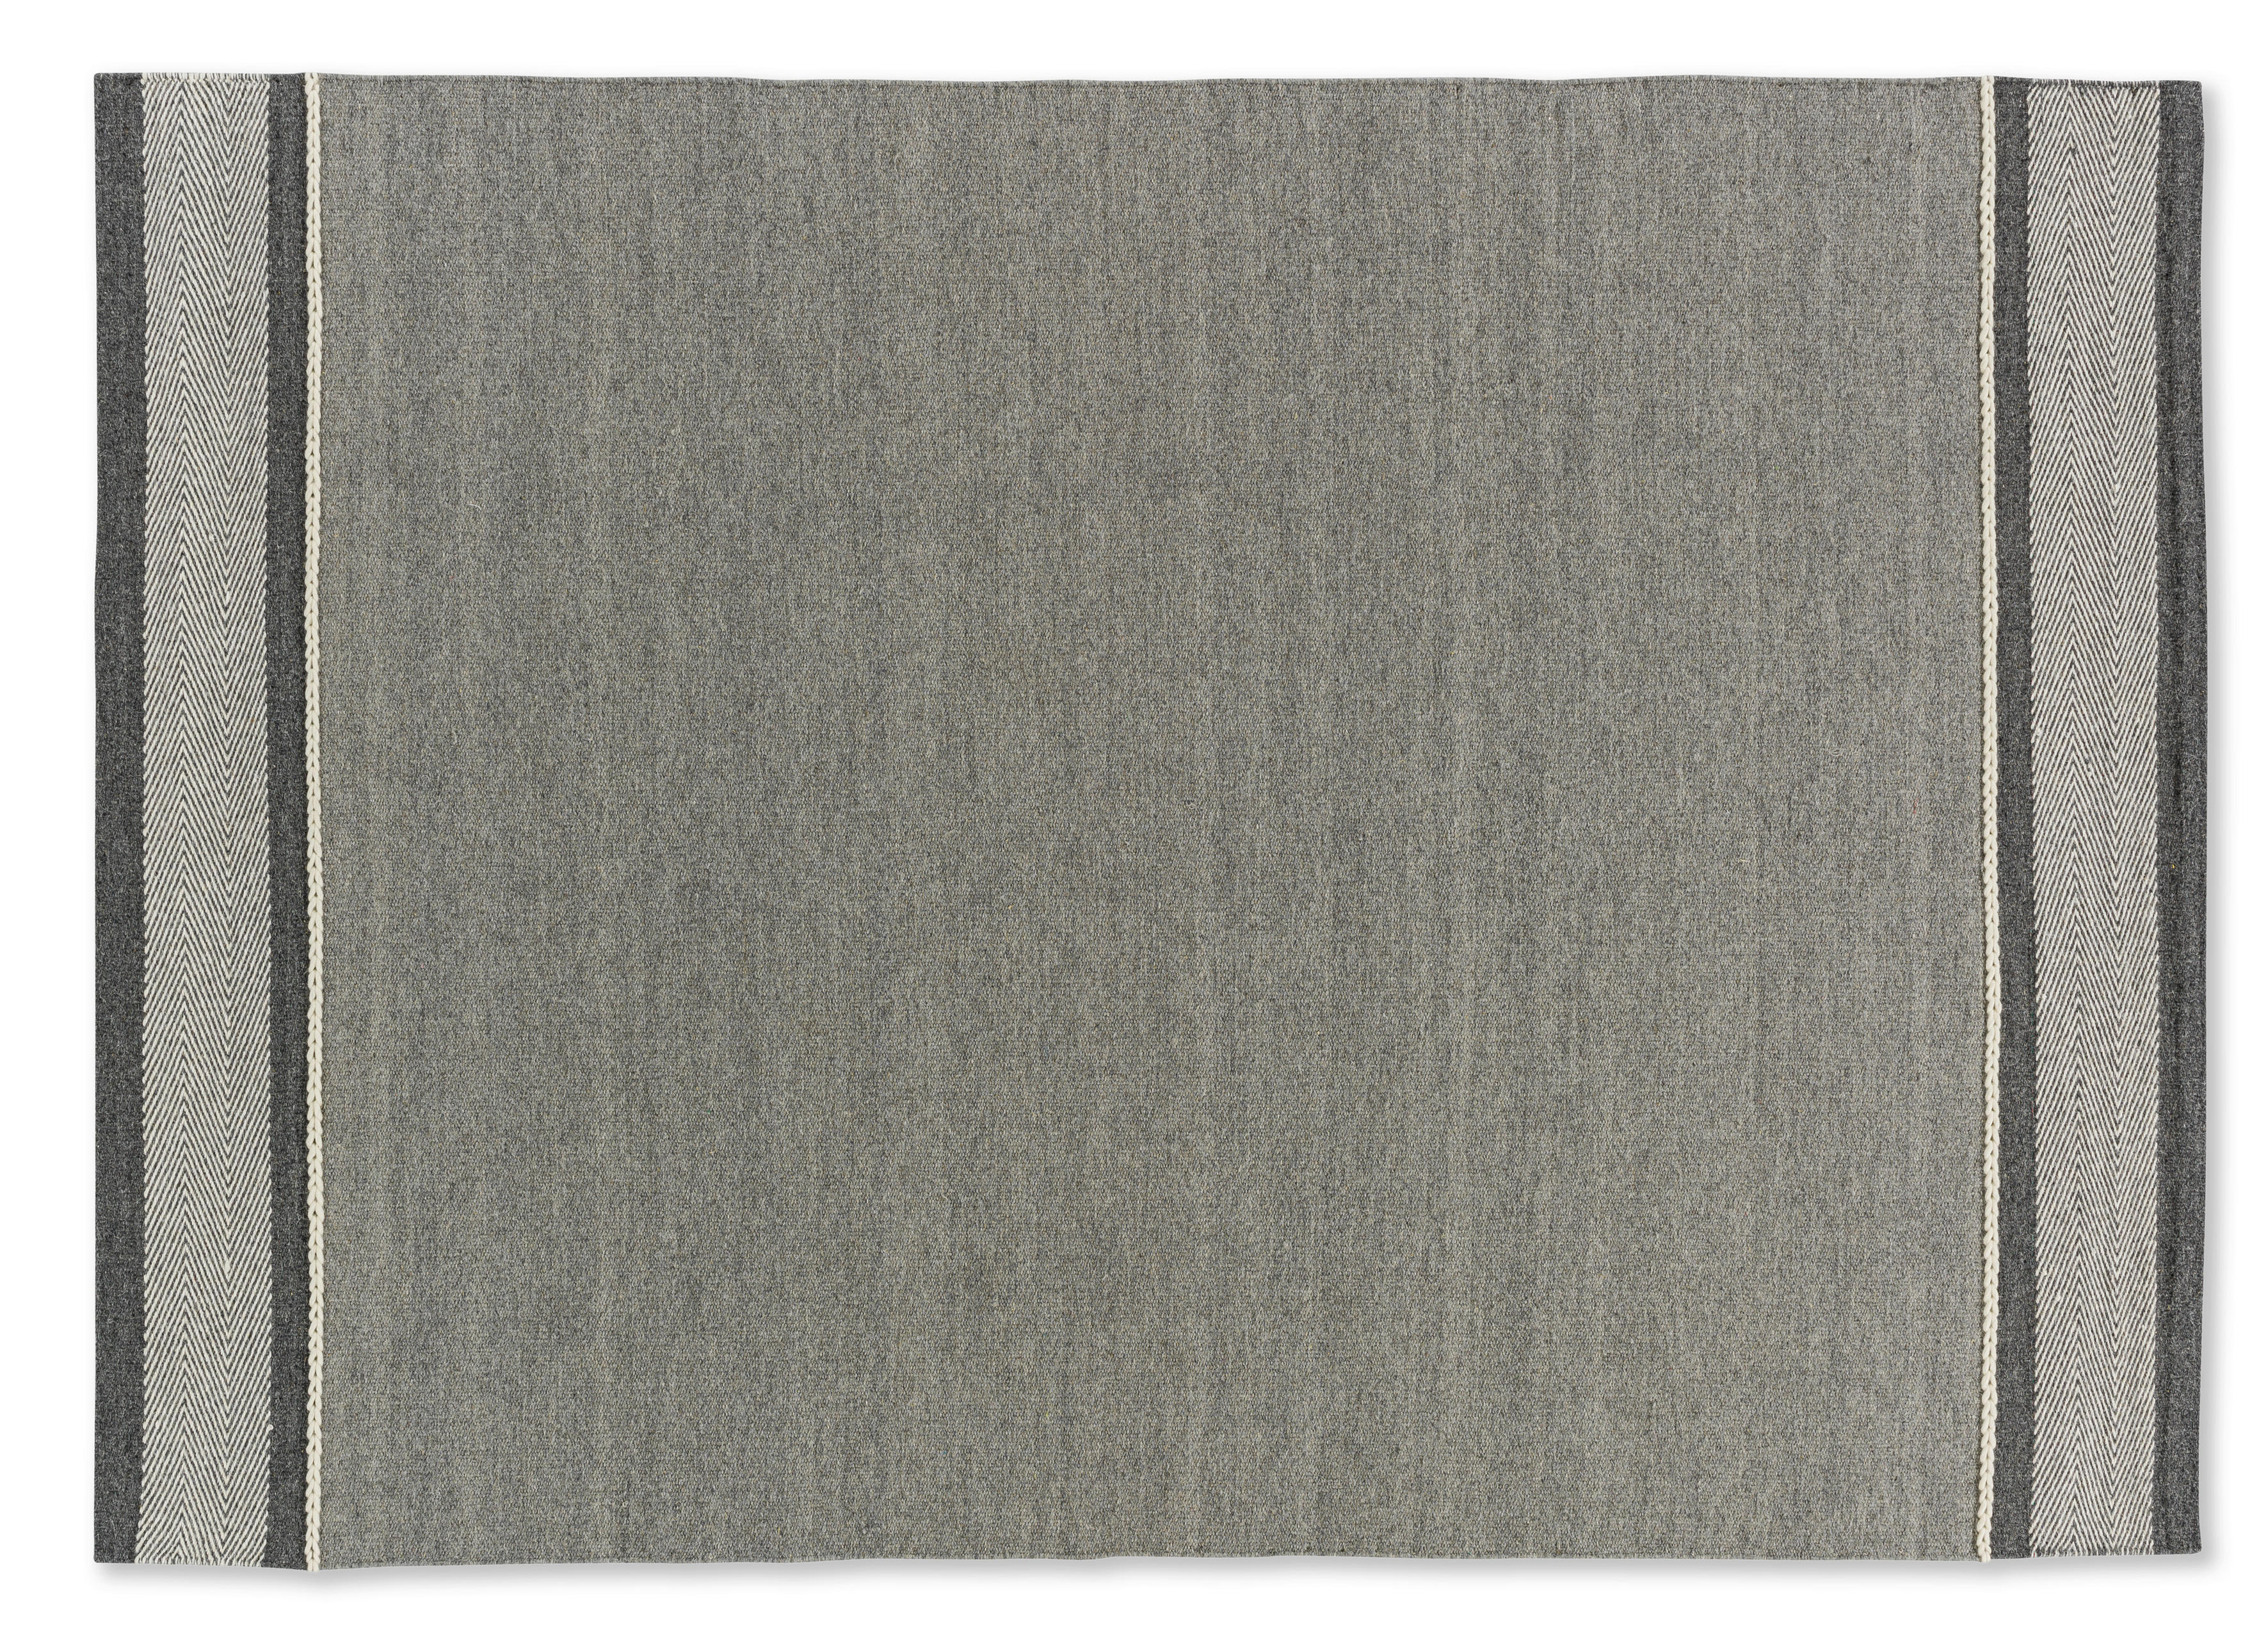 HANDWEBTEPPICH 170/240 cm  - Grau, KONVENTIONELL, Textil (170/240cm) - Schöner Wohnen